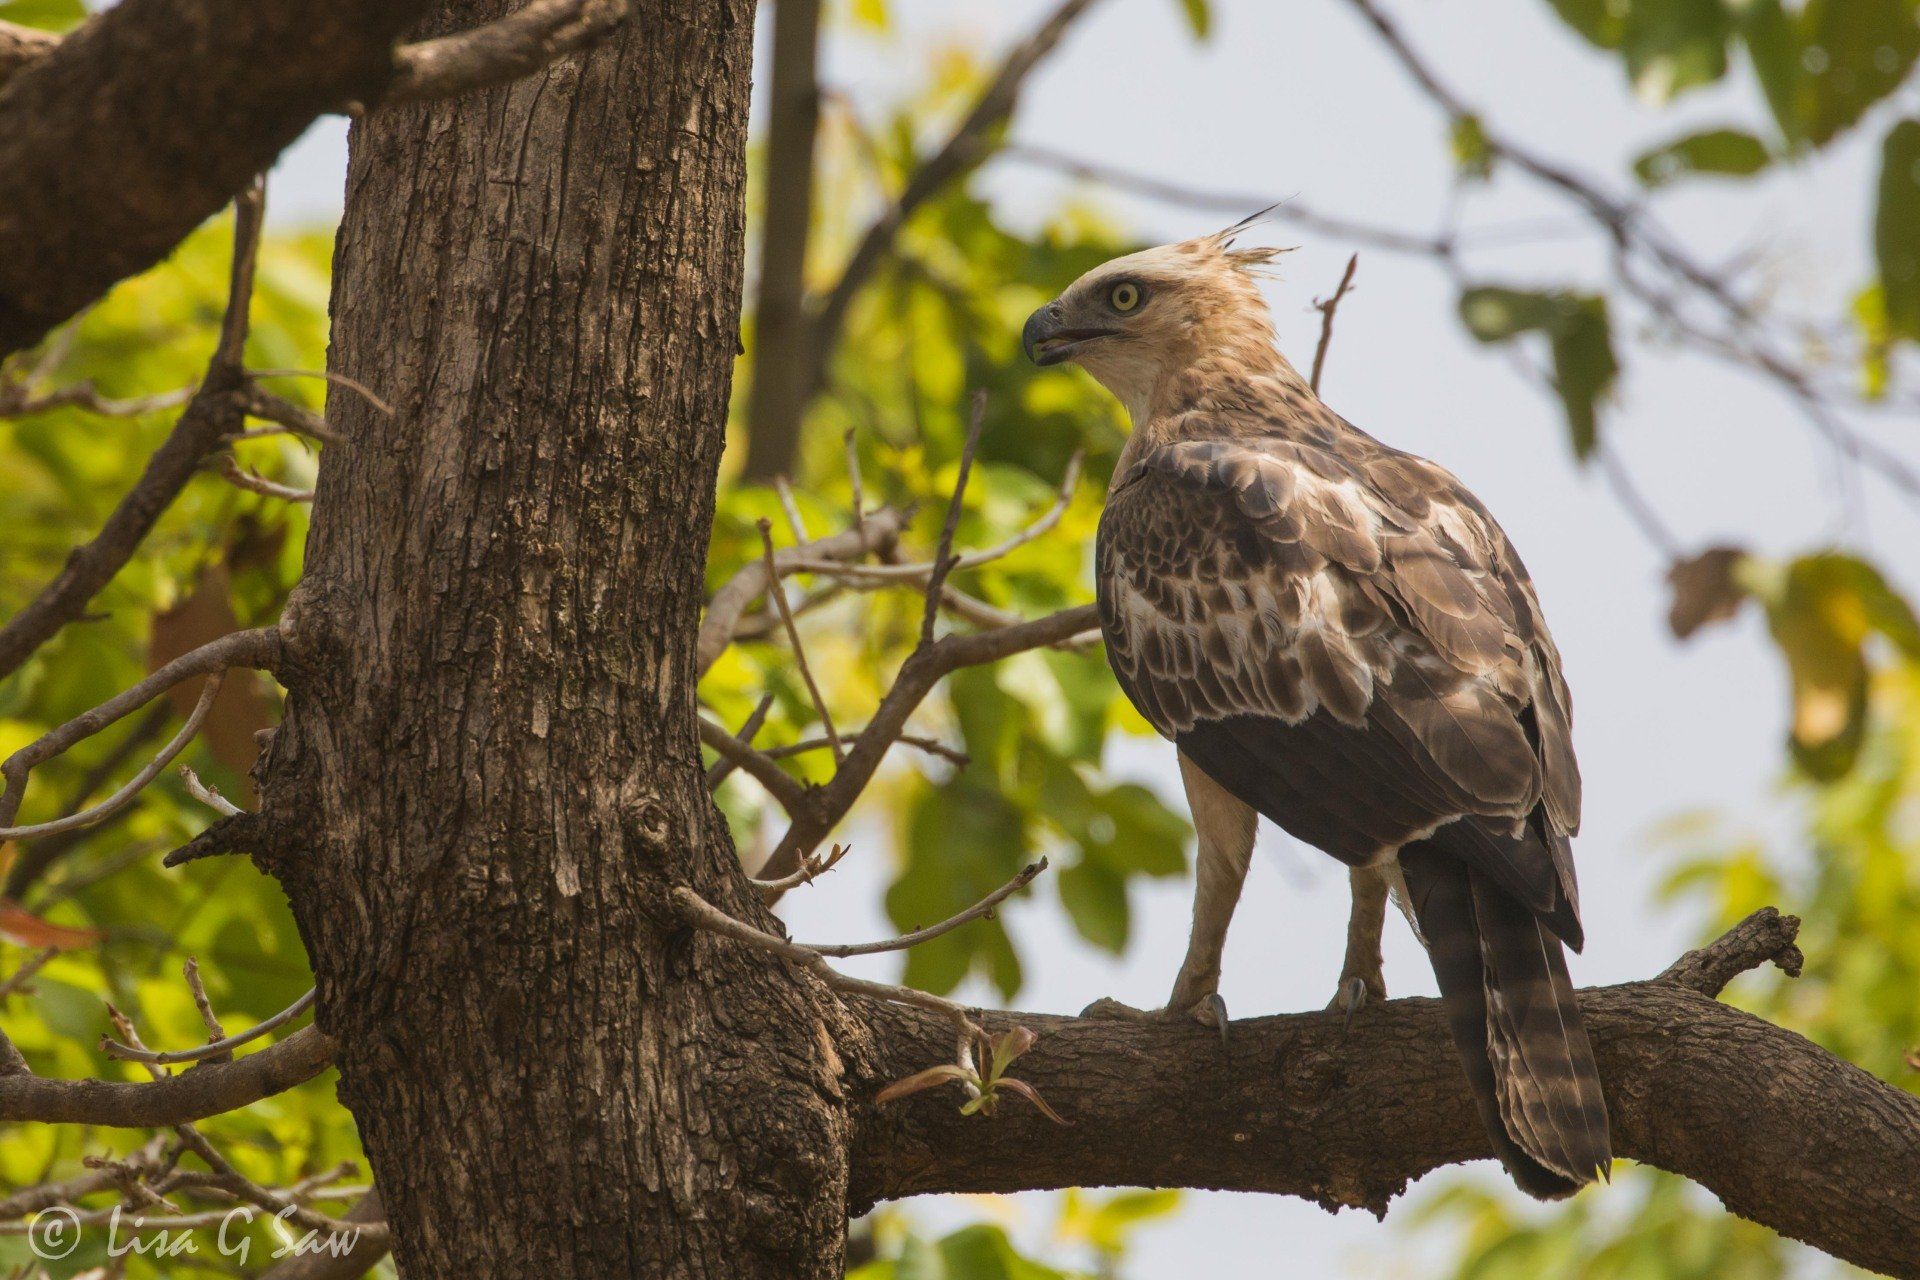 Crested Hawk-Eagle on branch in Bandhavgarh National Park